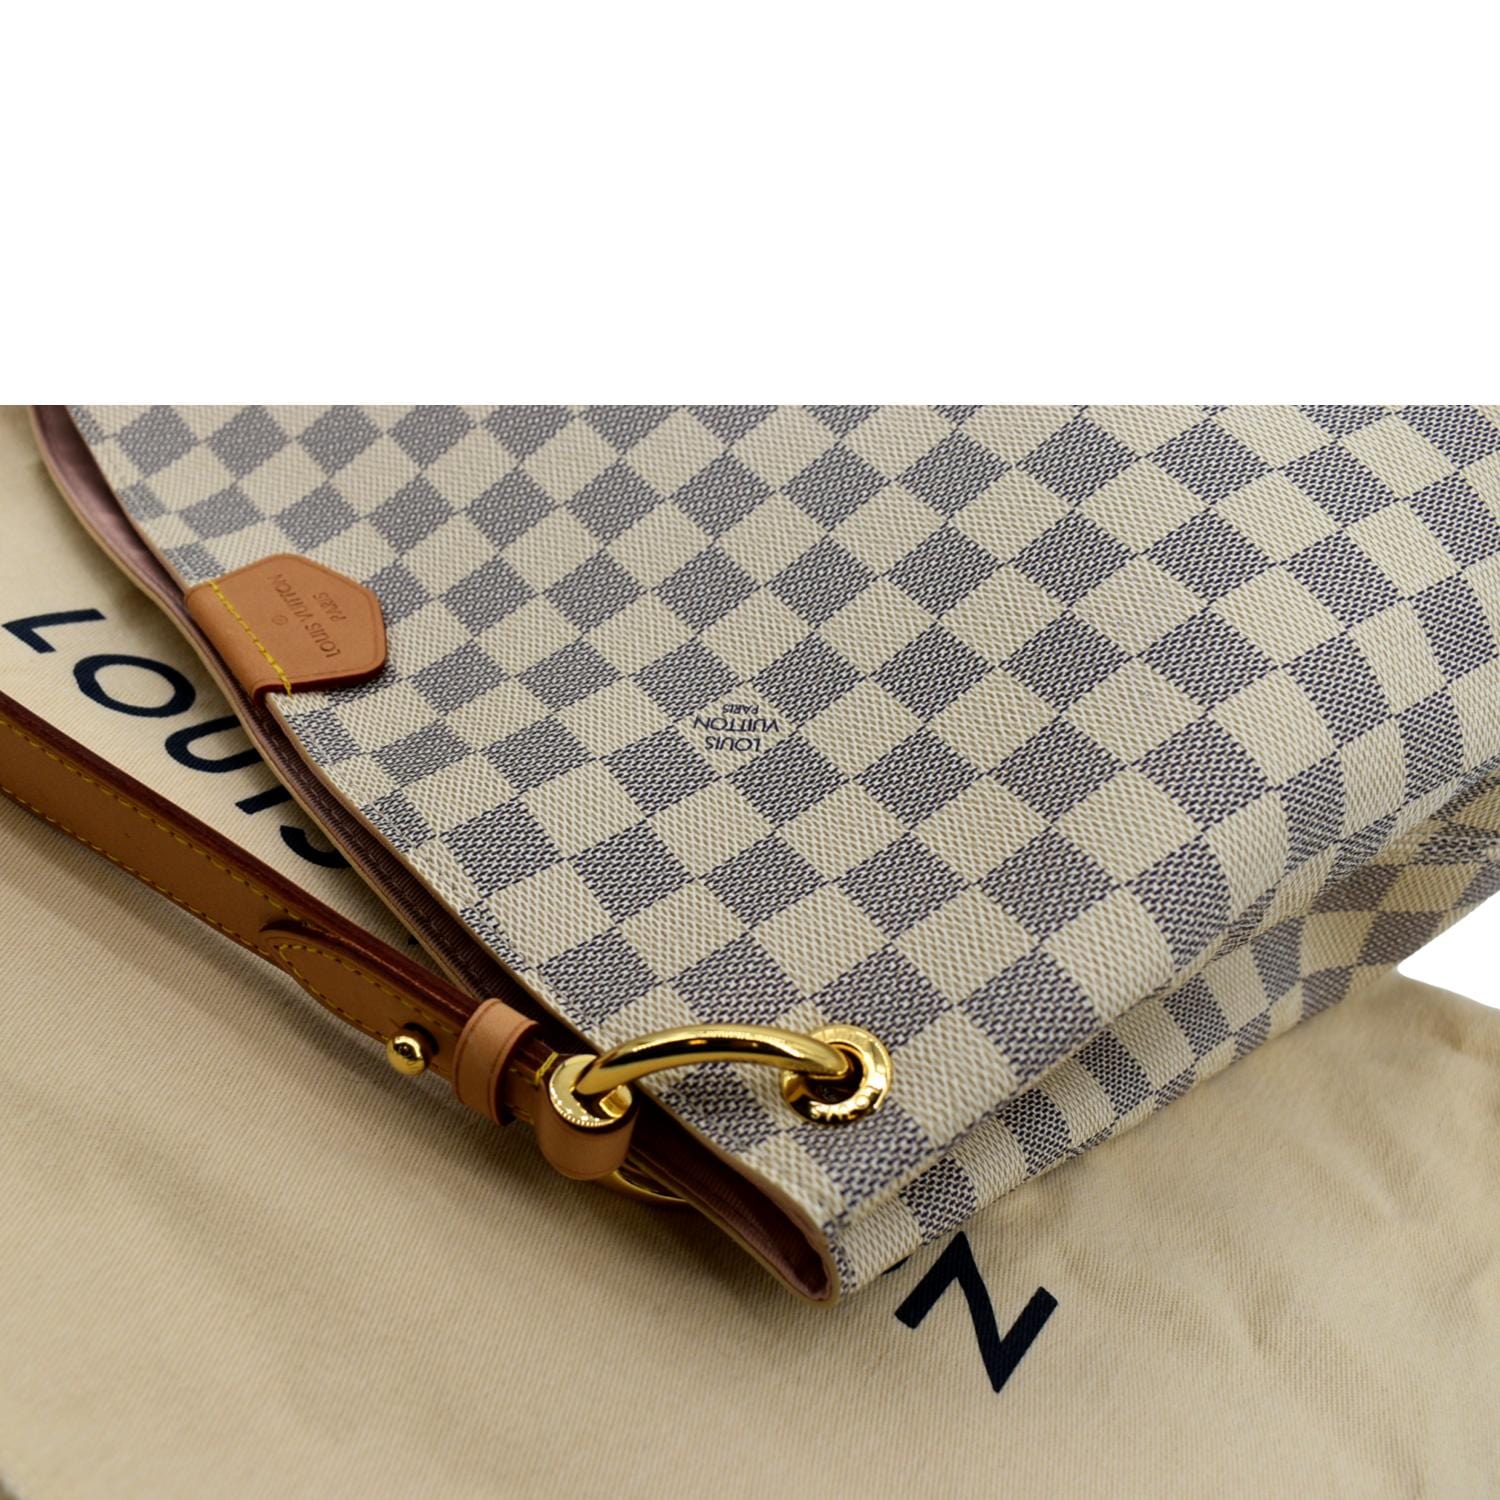 Louis Vuitton Damier Azur Canvas Graceful PM Shoulder Bag